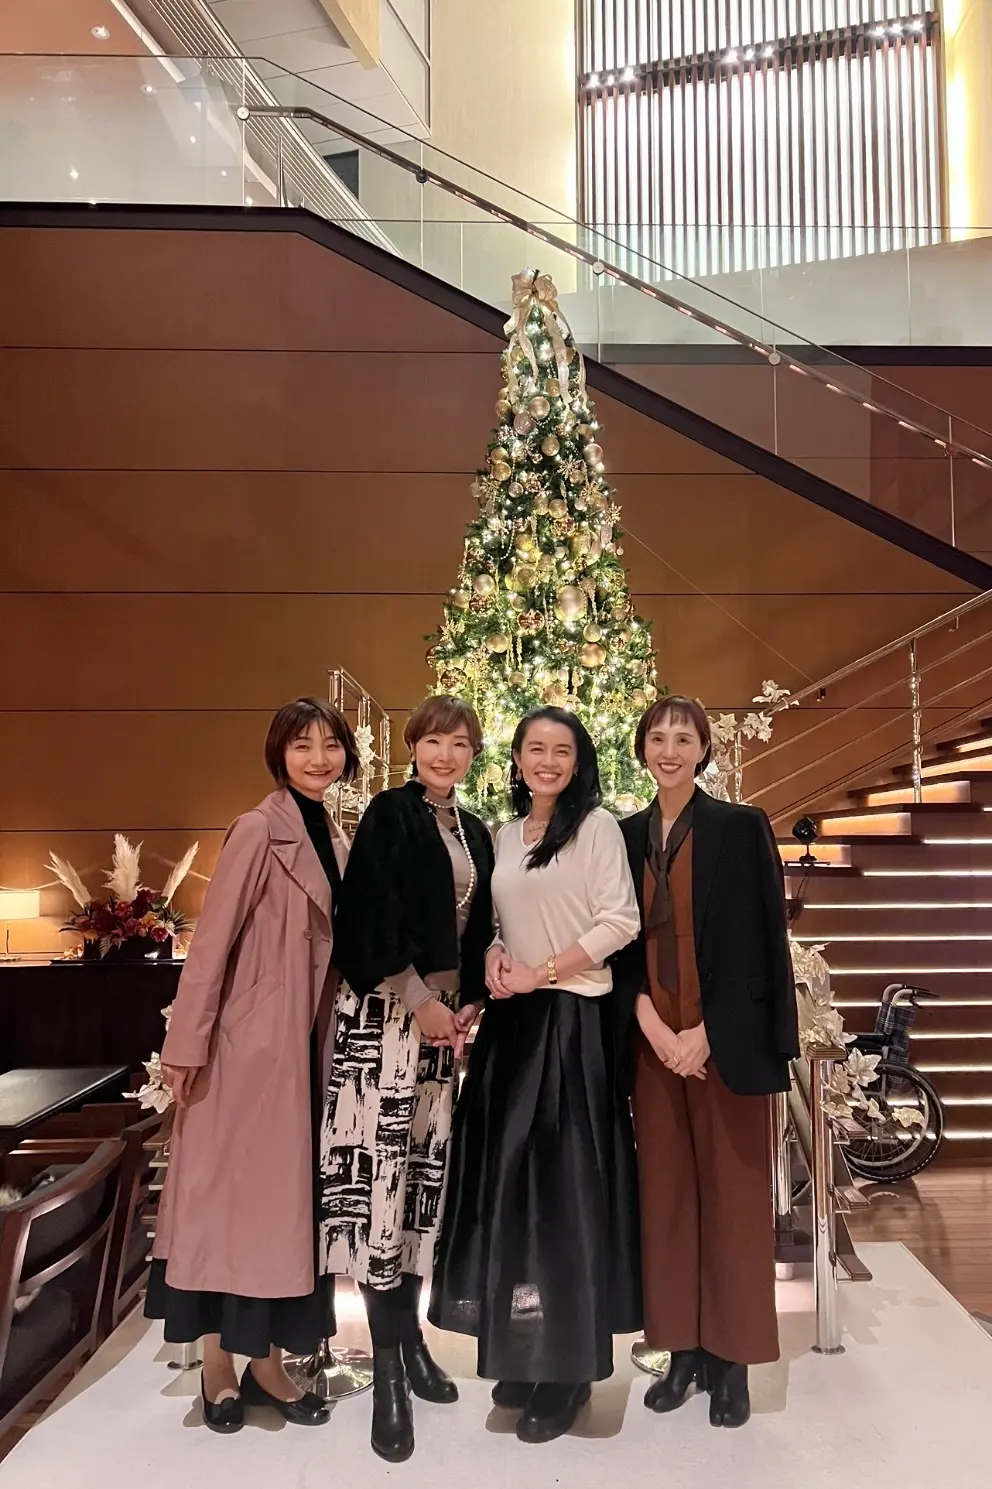 クリスマスアフターヌーンティー☆丸ノ内ホテル | 華組 水口宜子の